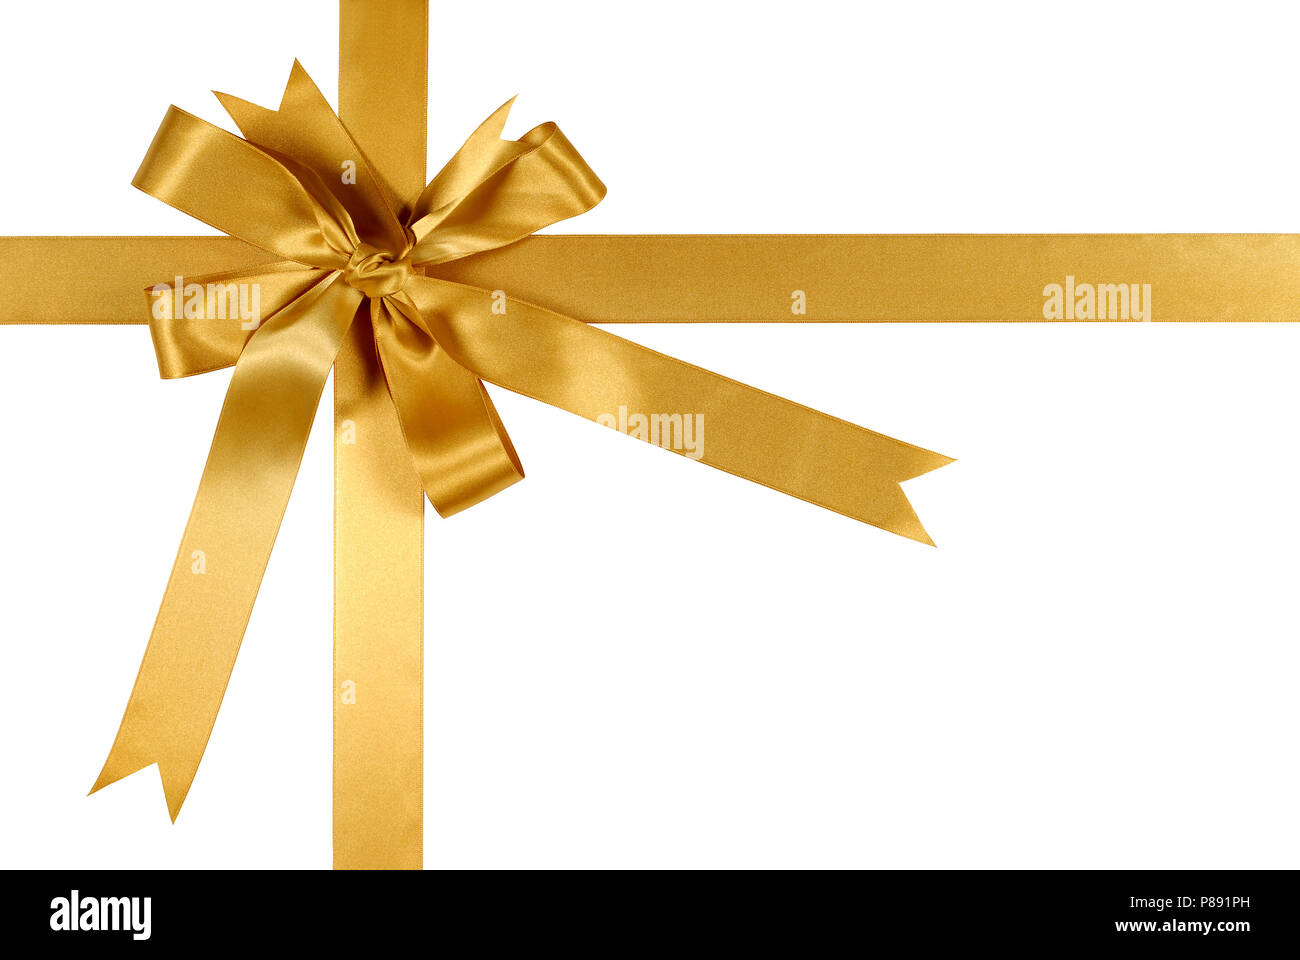 Gelb Gold Geschenk Schleife auf weißem Hintergrund Stockfotografie - Alamy